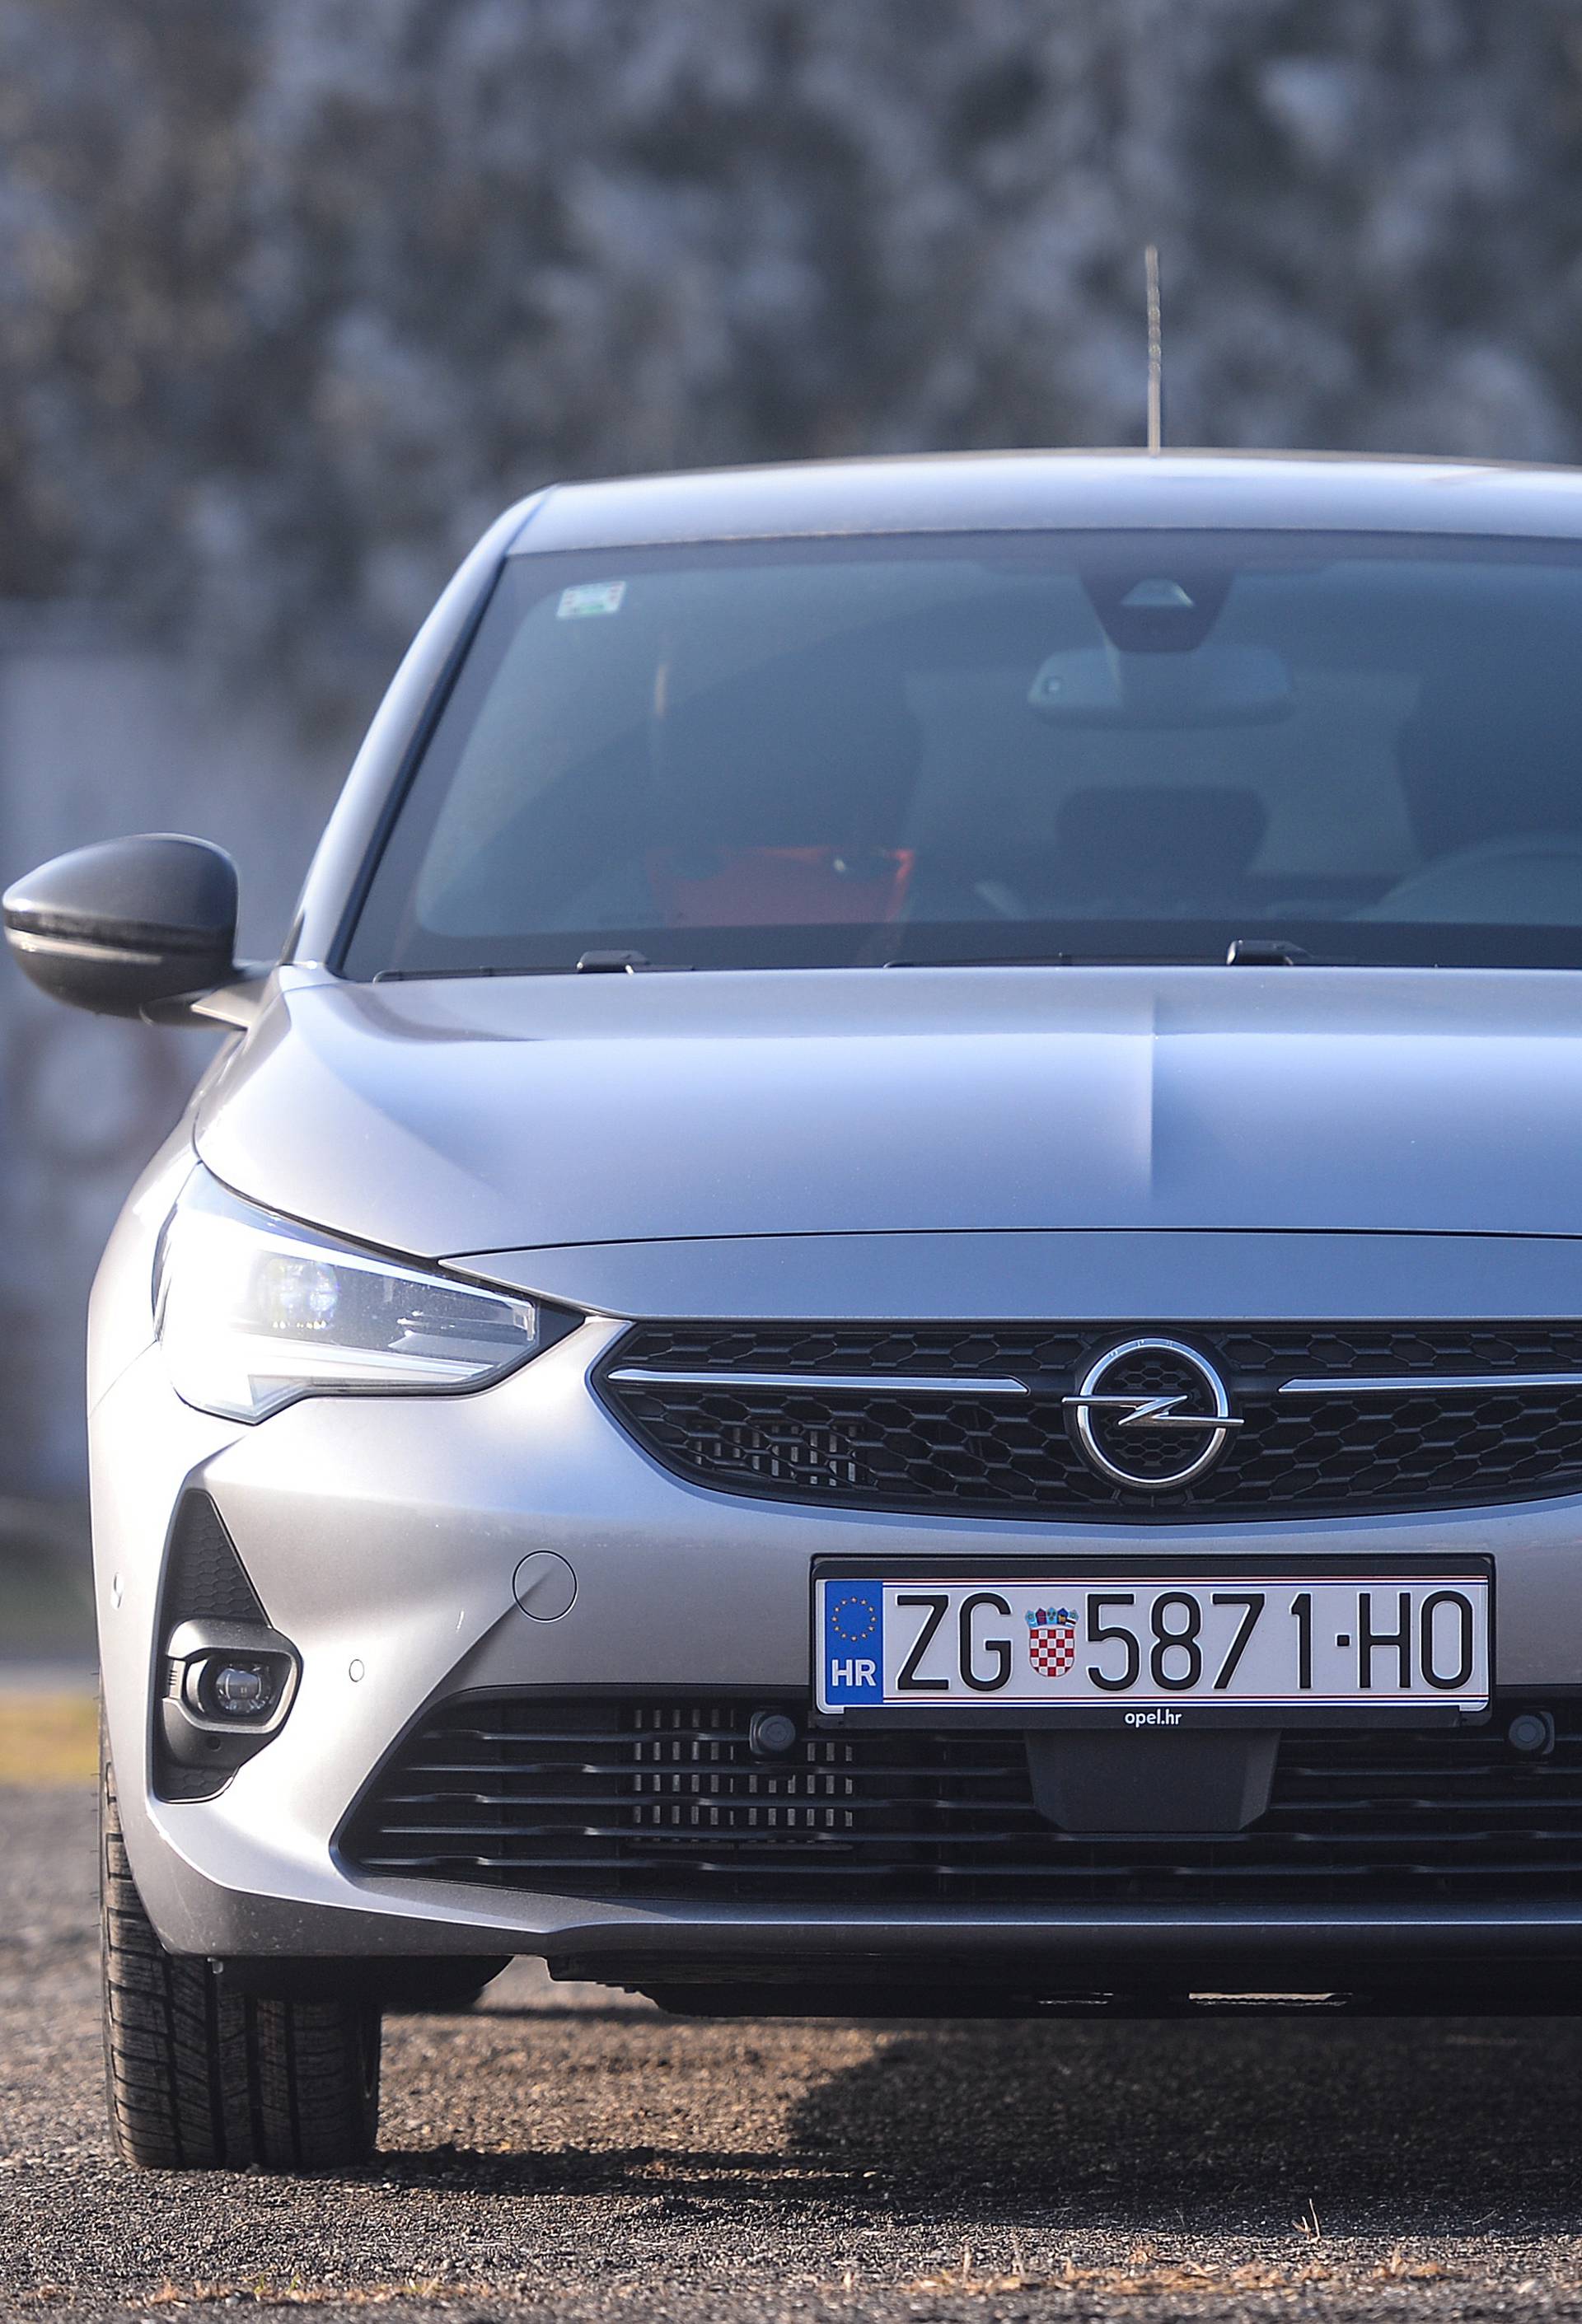 Testirali smo novu Corsu, još jedan drukčiji Opel novog doba